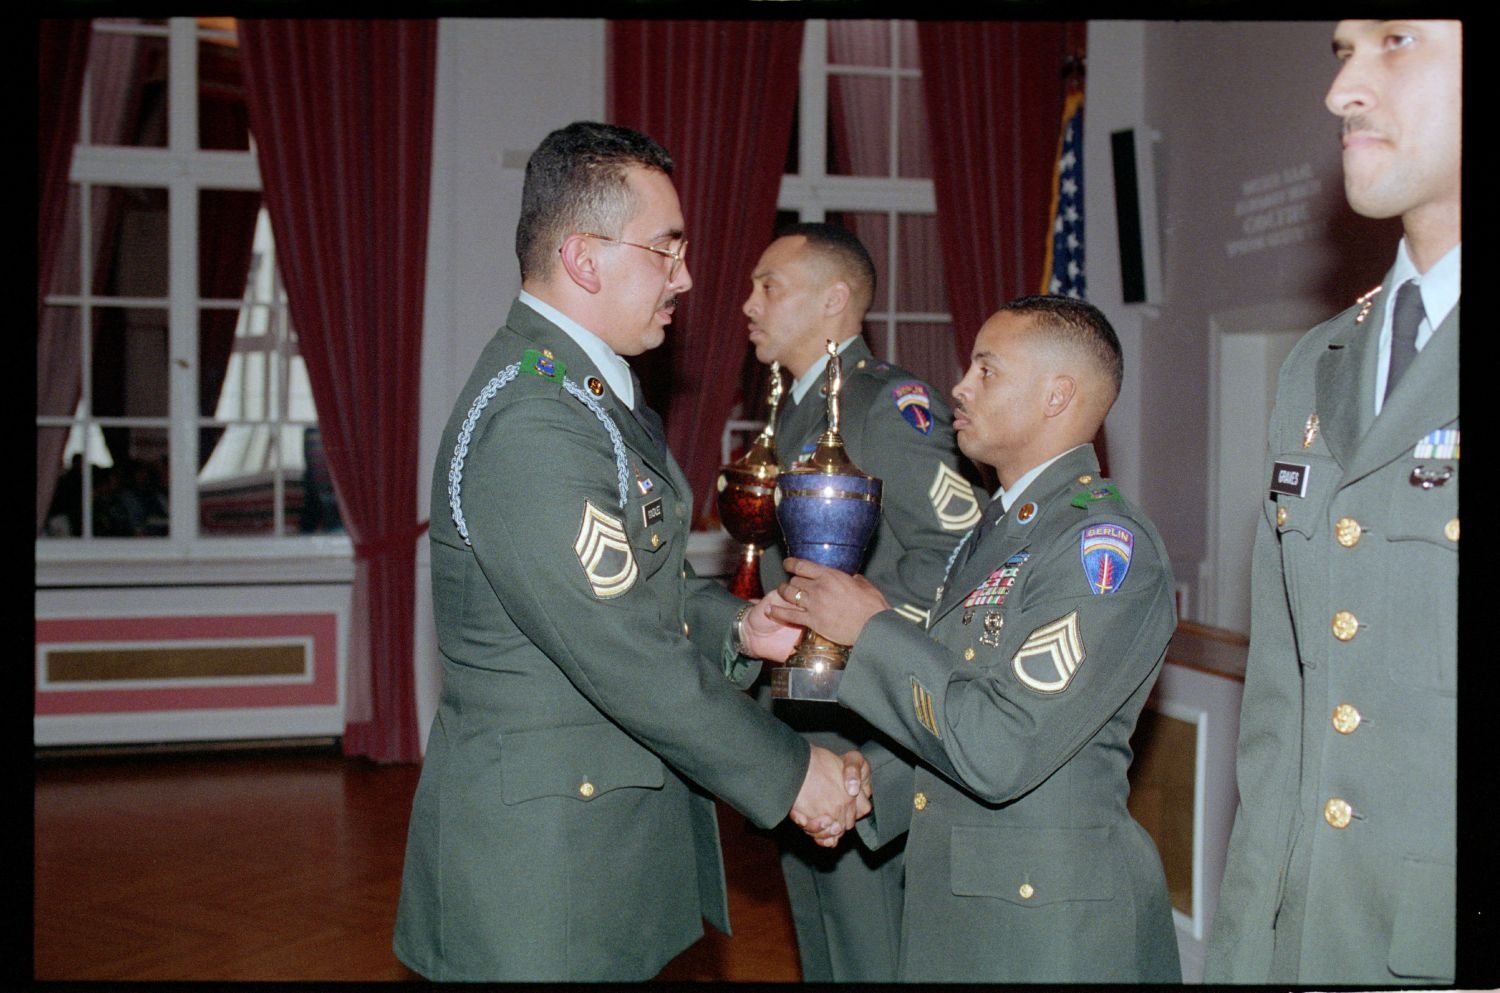 Fotografie: Auszeichnung von Unteroffizieren des 5th Battalion 502nd Infantry Regiment der U.S. Army Berlin in Berlin-Dahlem (AlliiertenMuseum/U.S. Army Photograph Public Domain Mark)